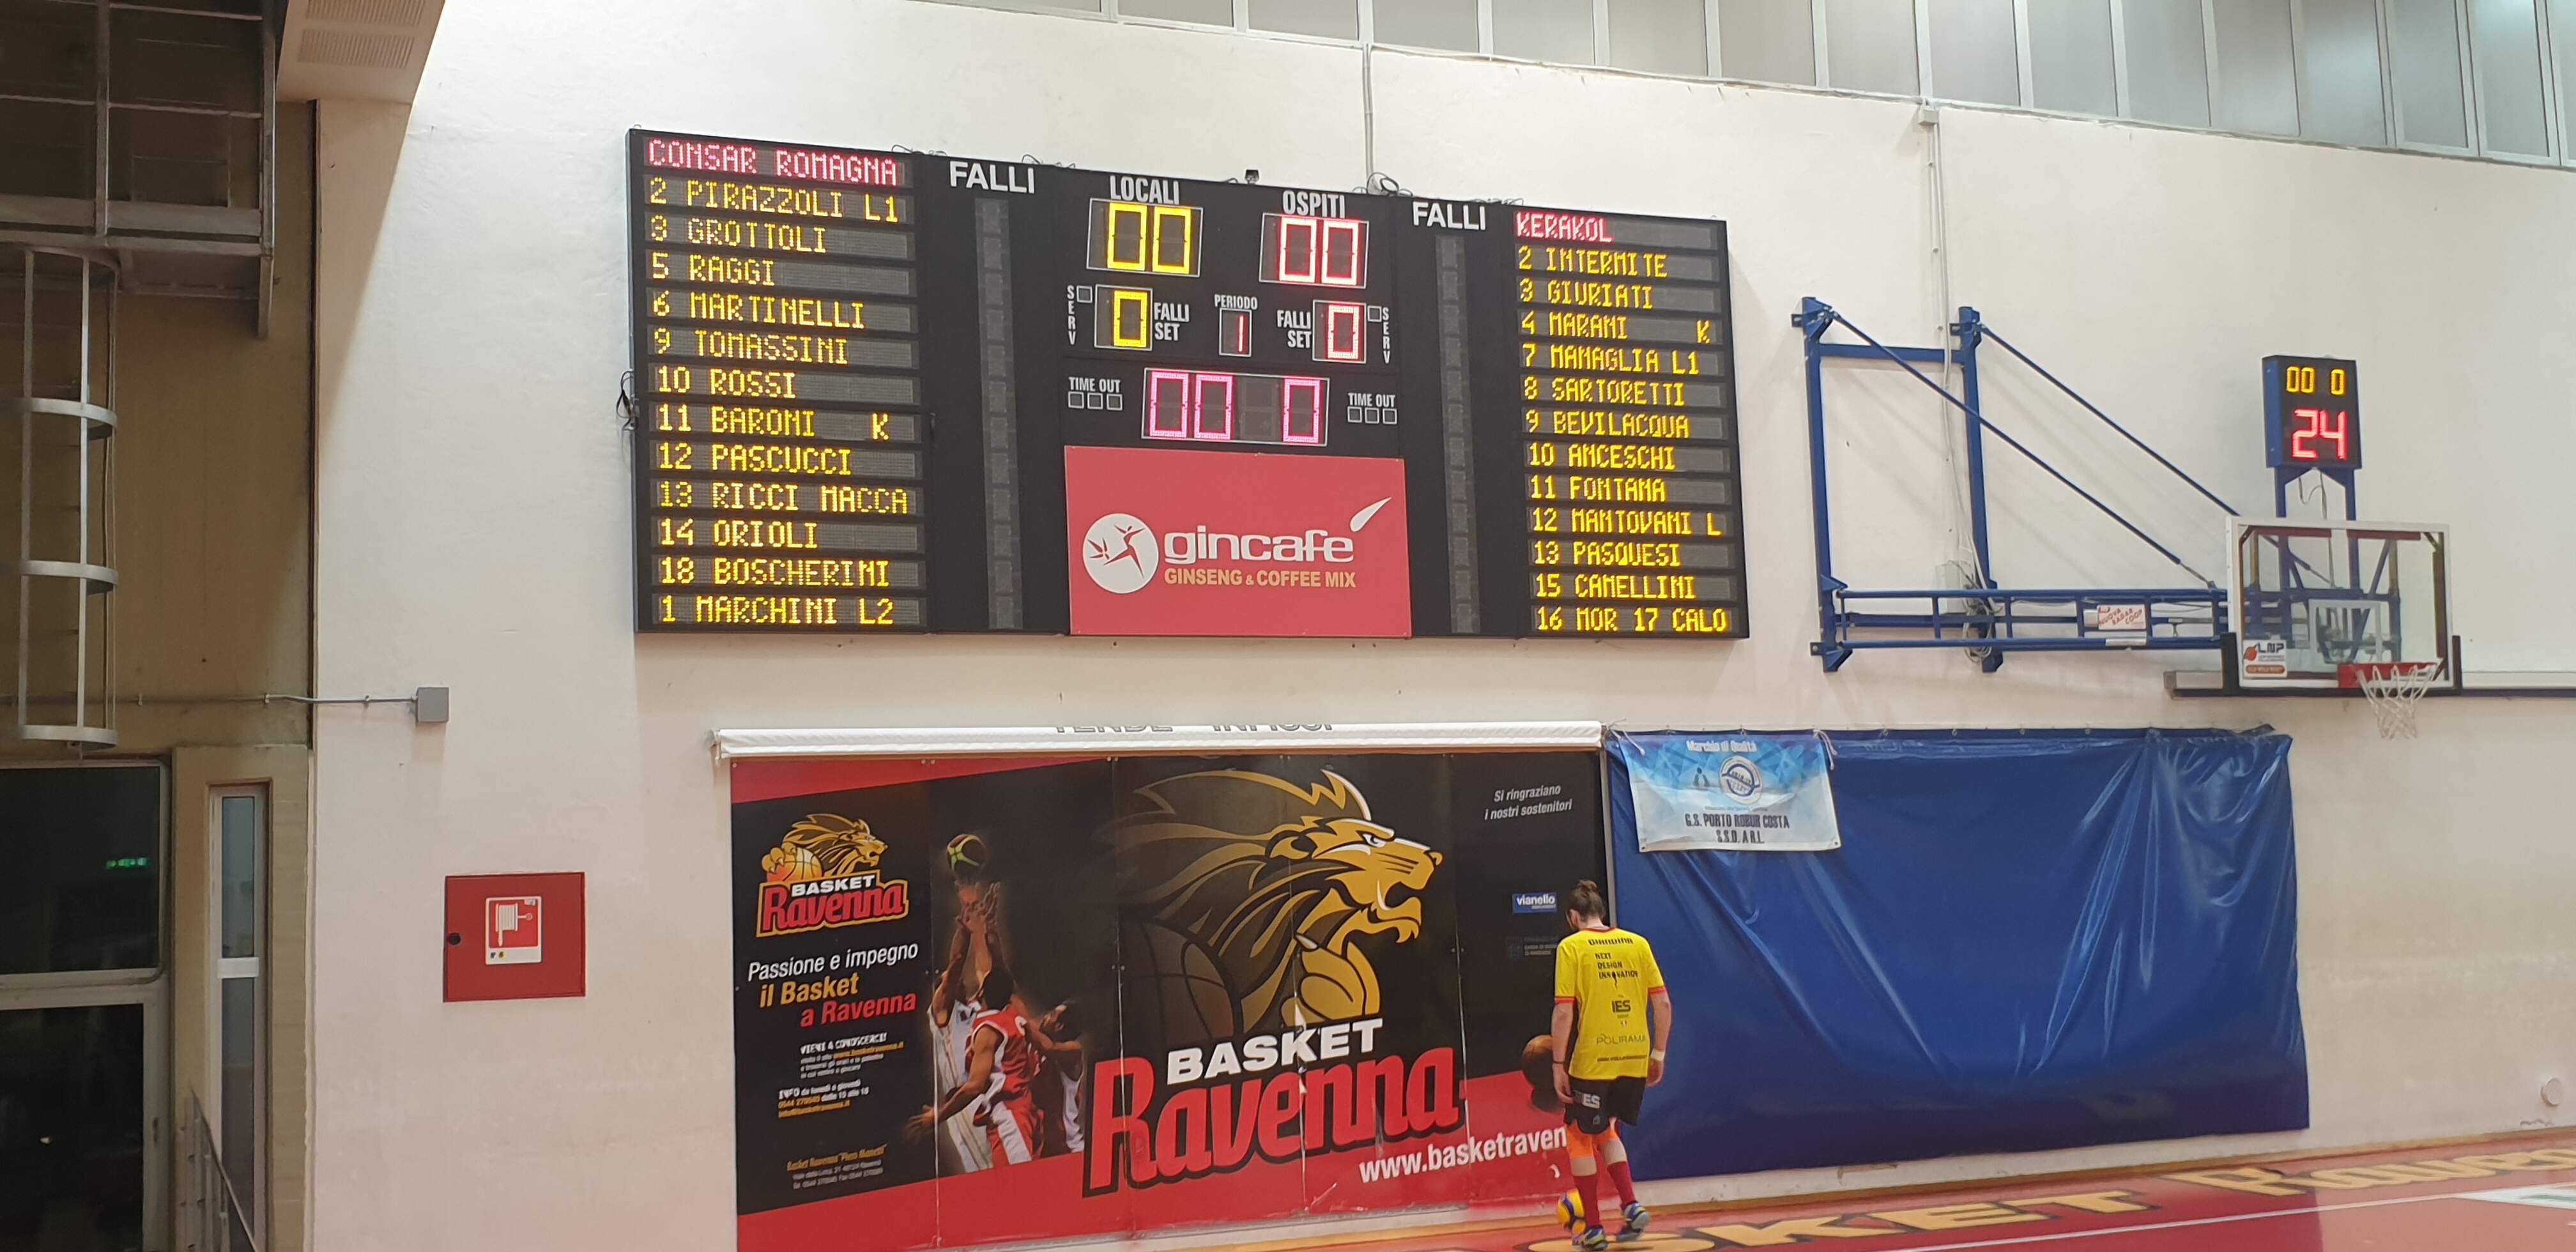 26-2-21  Volley Sassuolo  serie B maschile cede in trasferta contro Consar Ravenna  per 3-1.